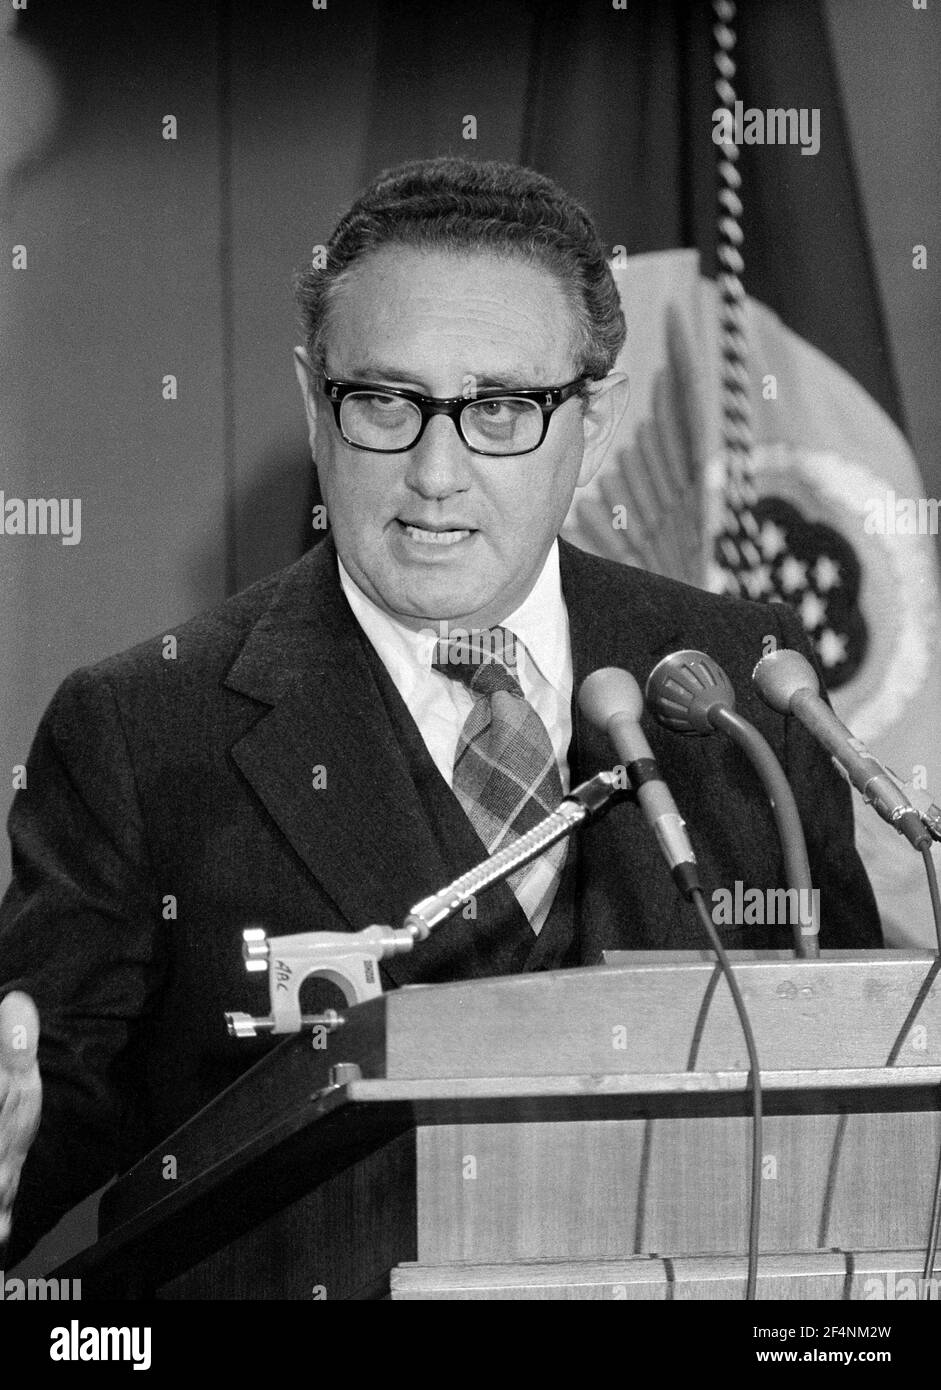 Henry Kissinger. Retrato del Secretario de Estado de los Estados Unidos, Henry Alfred Kissinger (n. Heinz Alfred Kissinger, 1923) por Thomas J o'Halloran, conferencia de prensa, 1975 Foto de stock